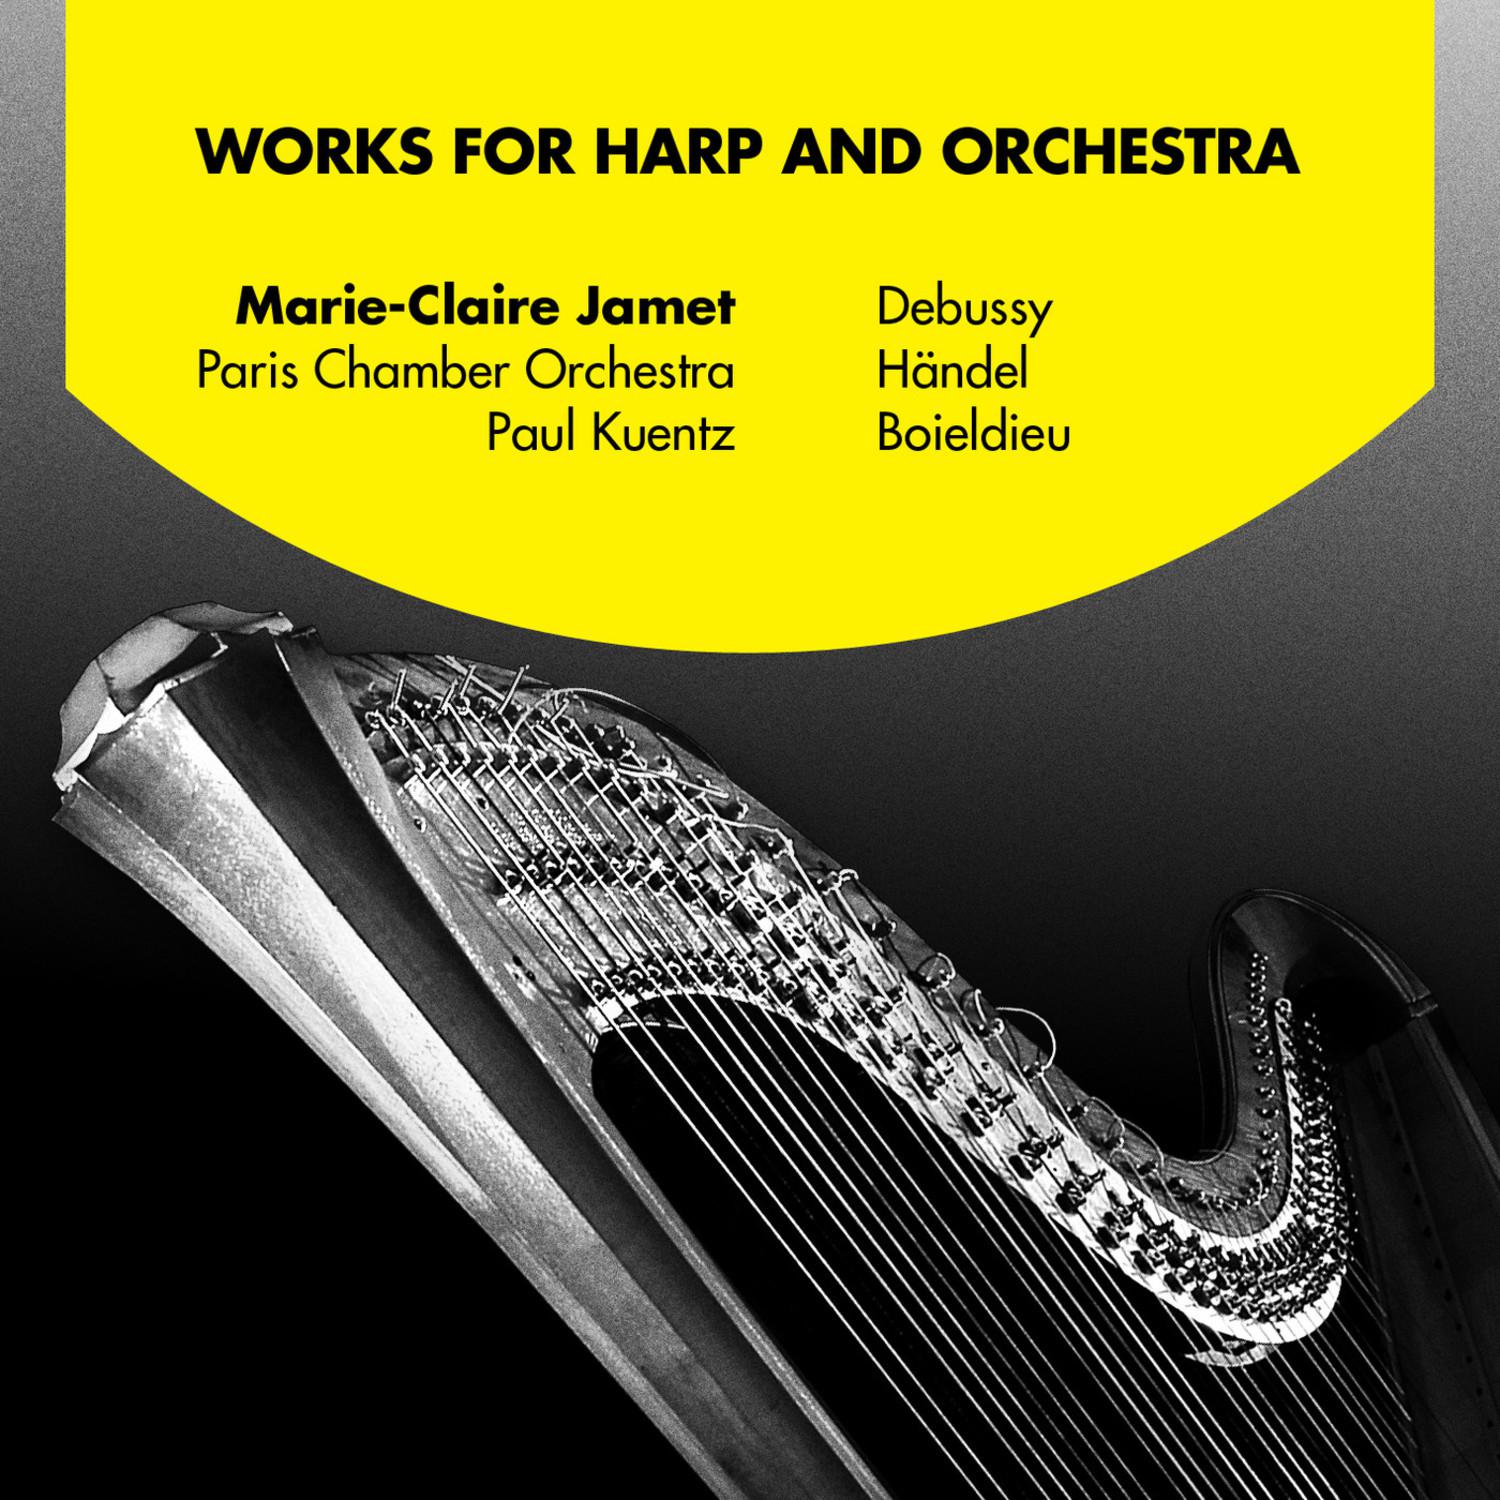 Concerto in C major for Harp and Orchestra: II. Largo - III. Rondeau: Allegro agitato